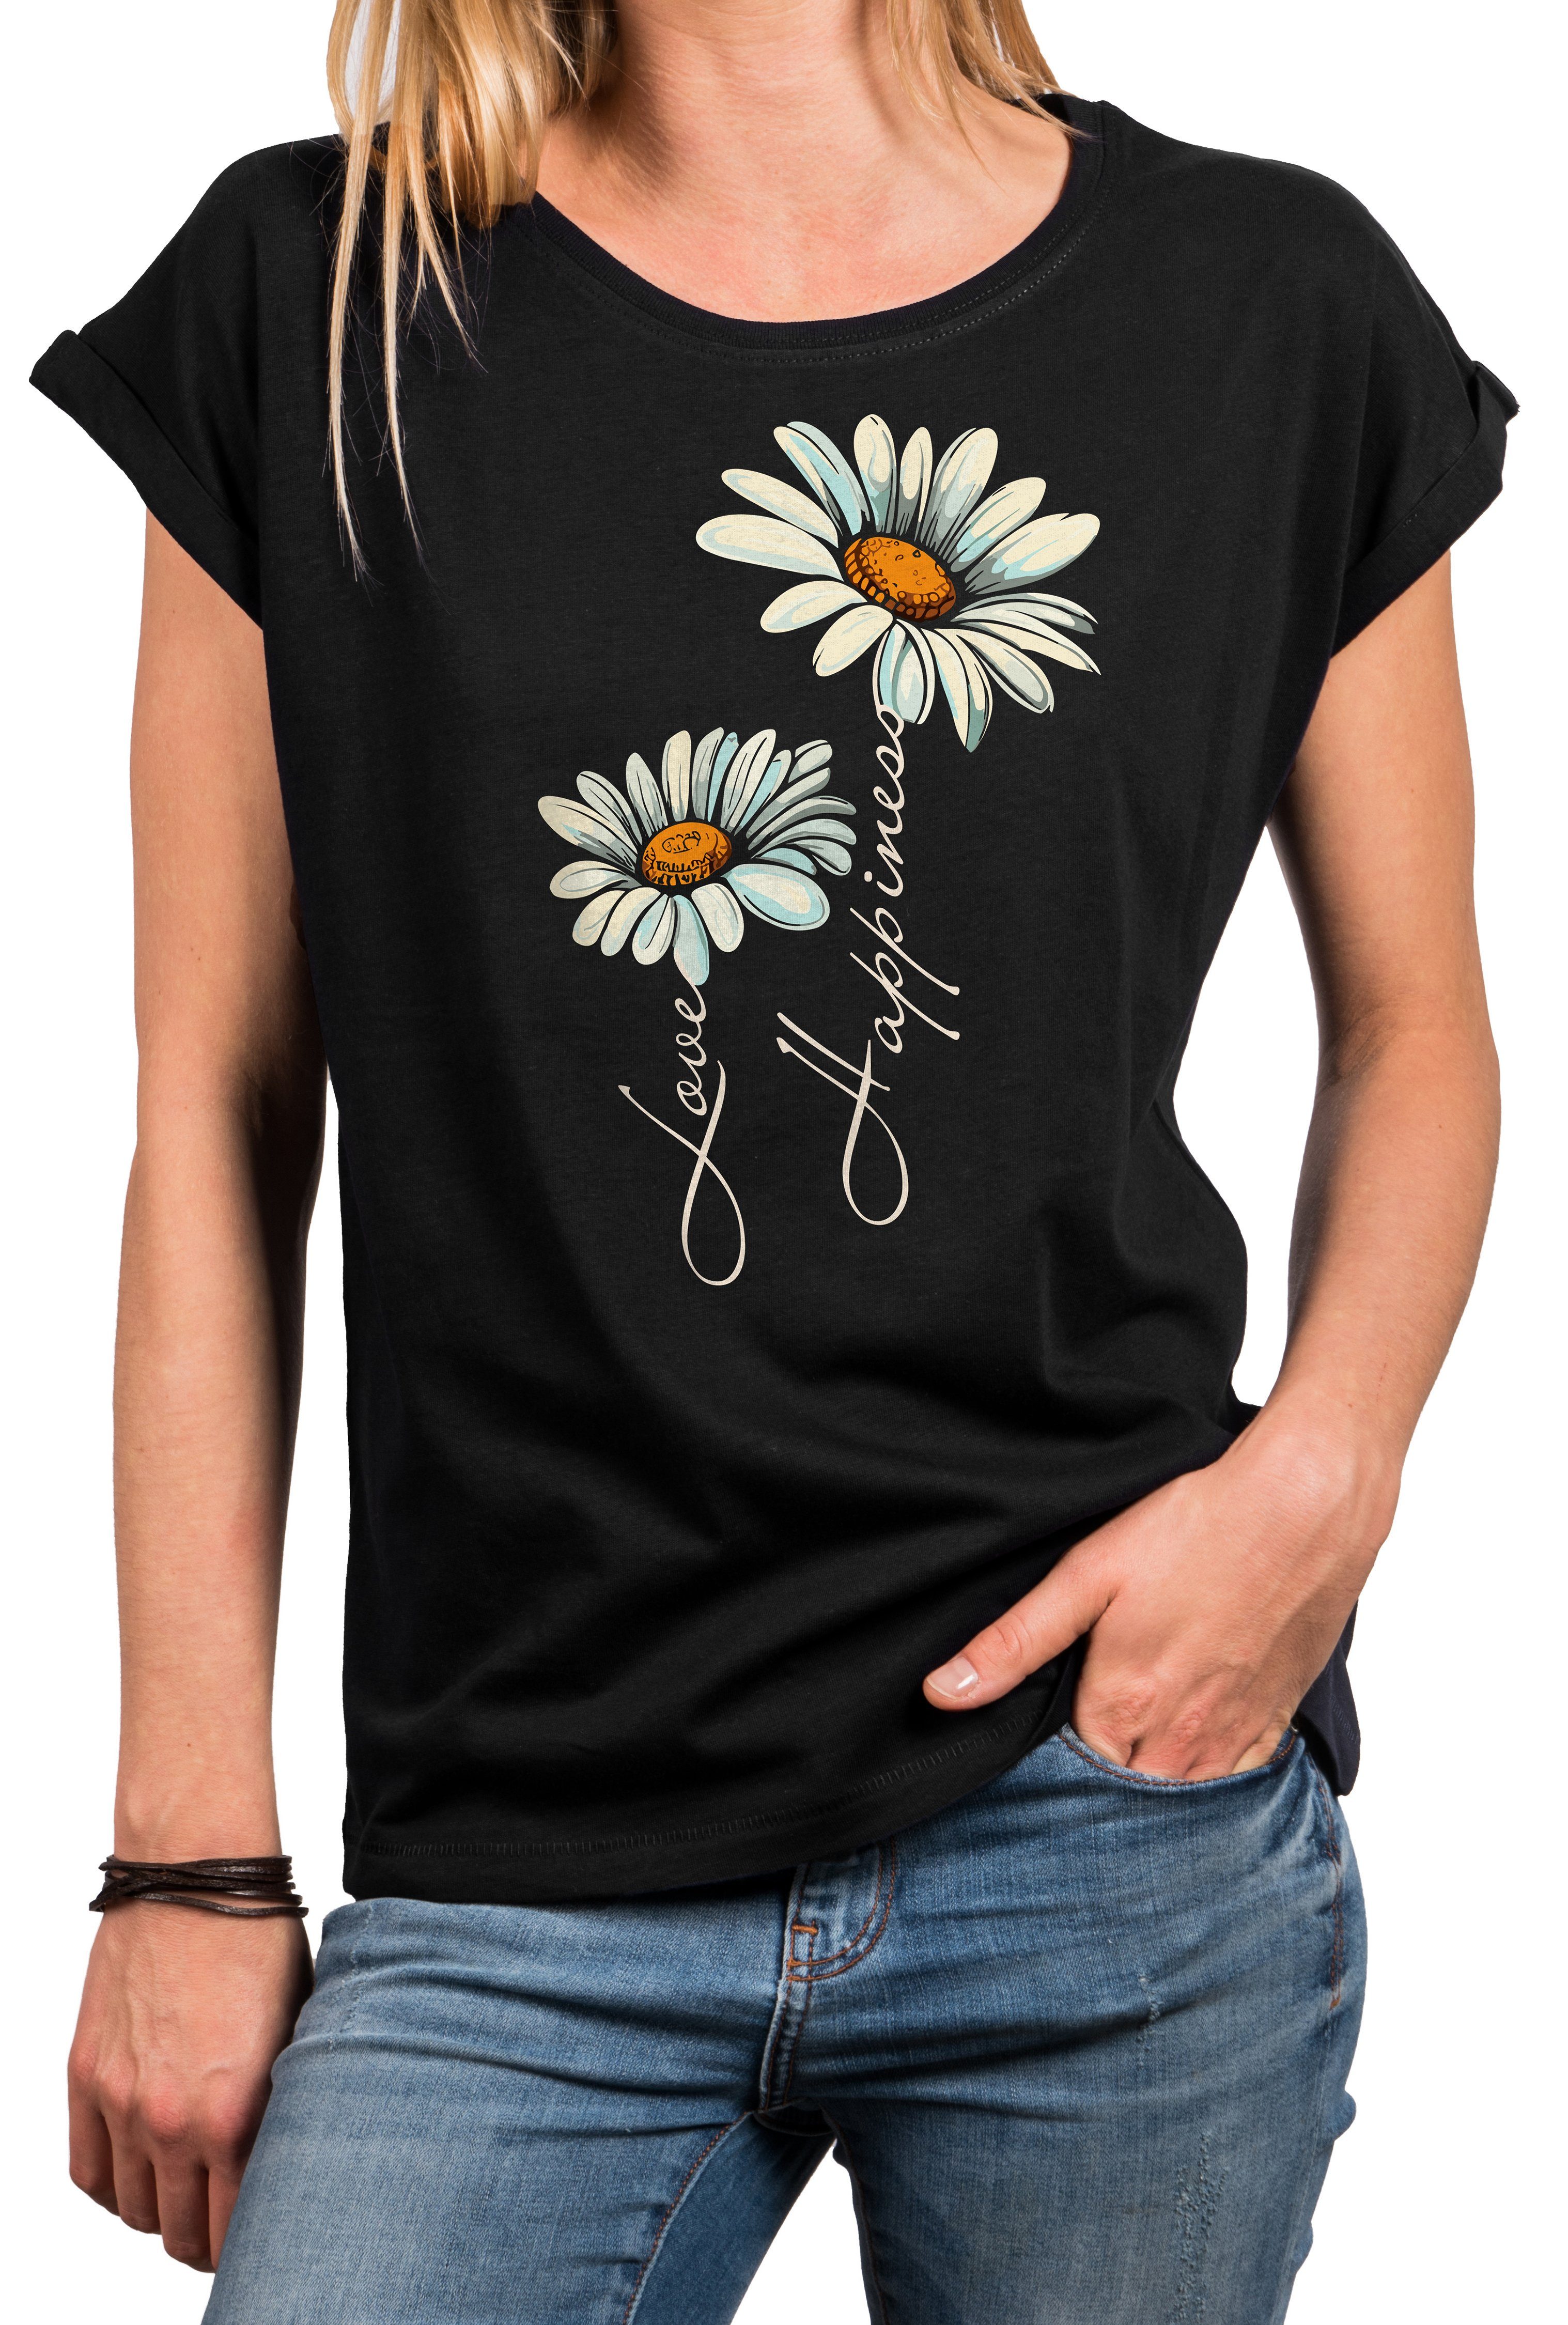 MAKAYA Print-Shirt Damen Kurzarm Top Blumen Gänseblümchen floral Blumenmuster Blümchenprint, goße Größen